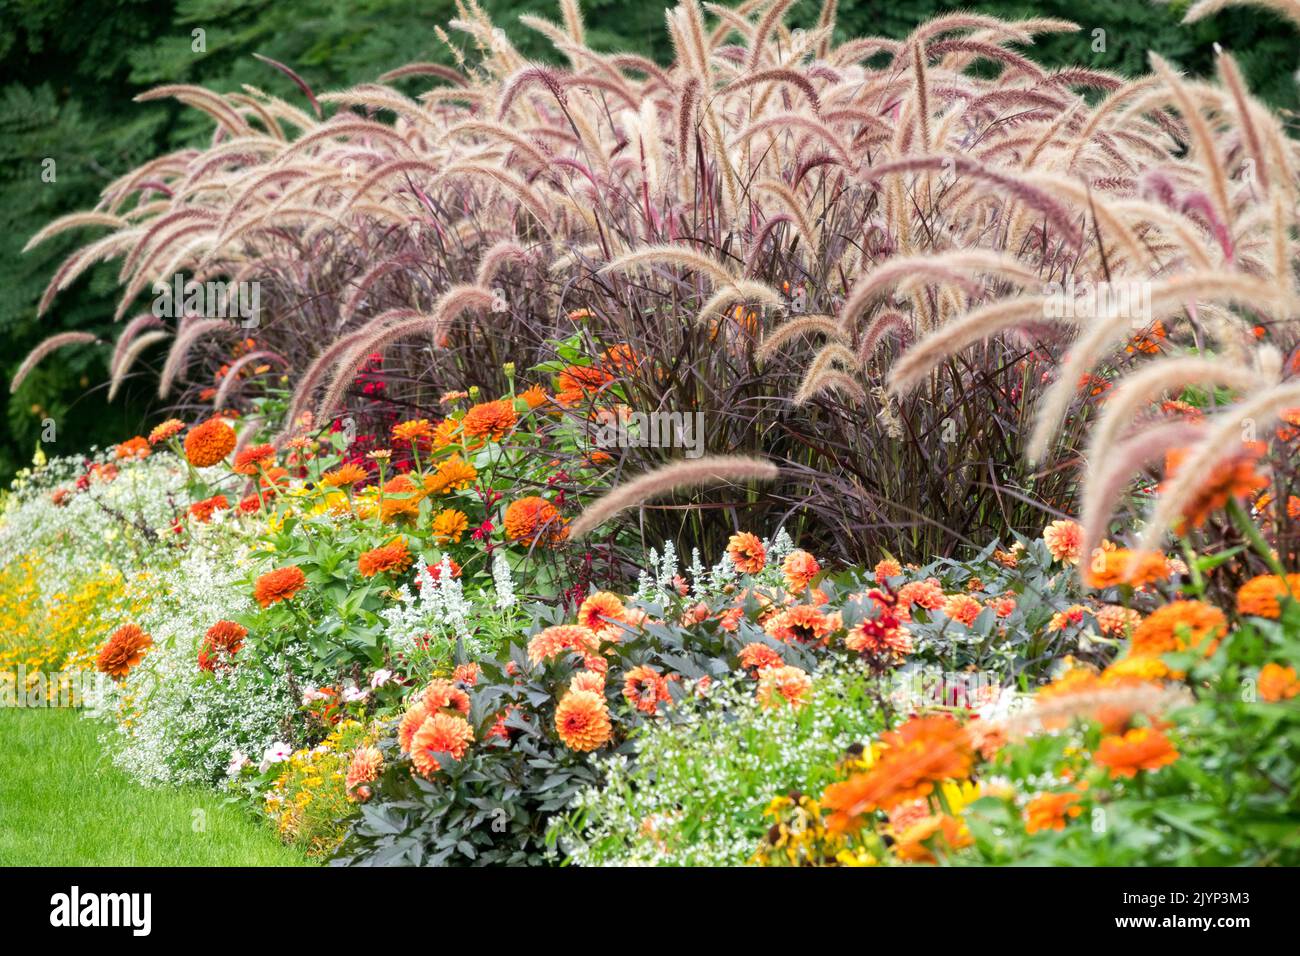 Landschaftlich gestaltete Blumen in einem Blumenbeet Moderne Gartengräser Pennisetum setaceum 'rubrum', Purple Fountain Grass, Zinnias und andere Bettpflanzen gemischt Stockfoto